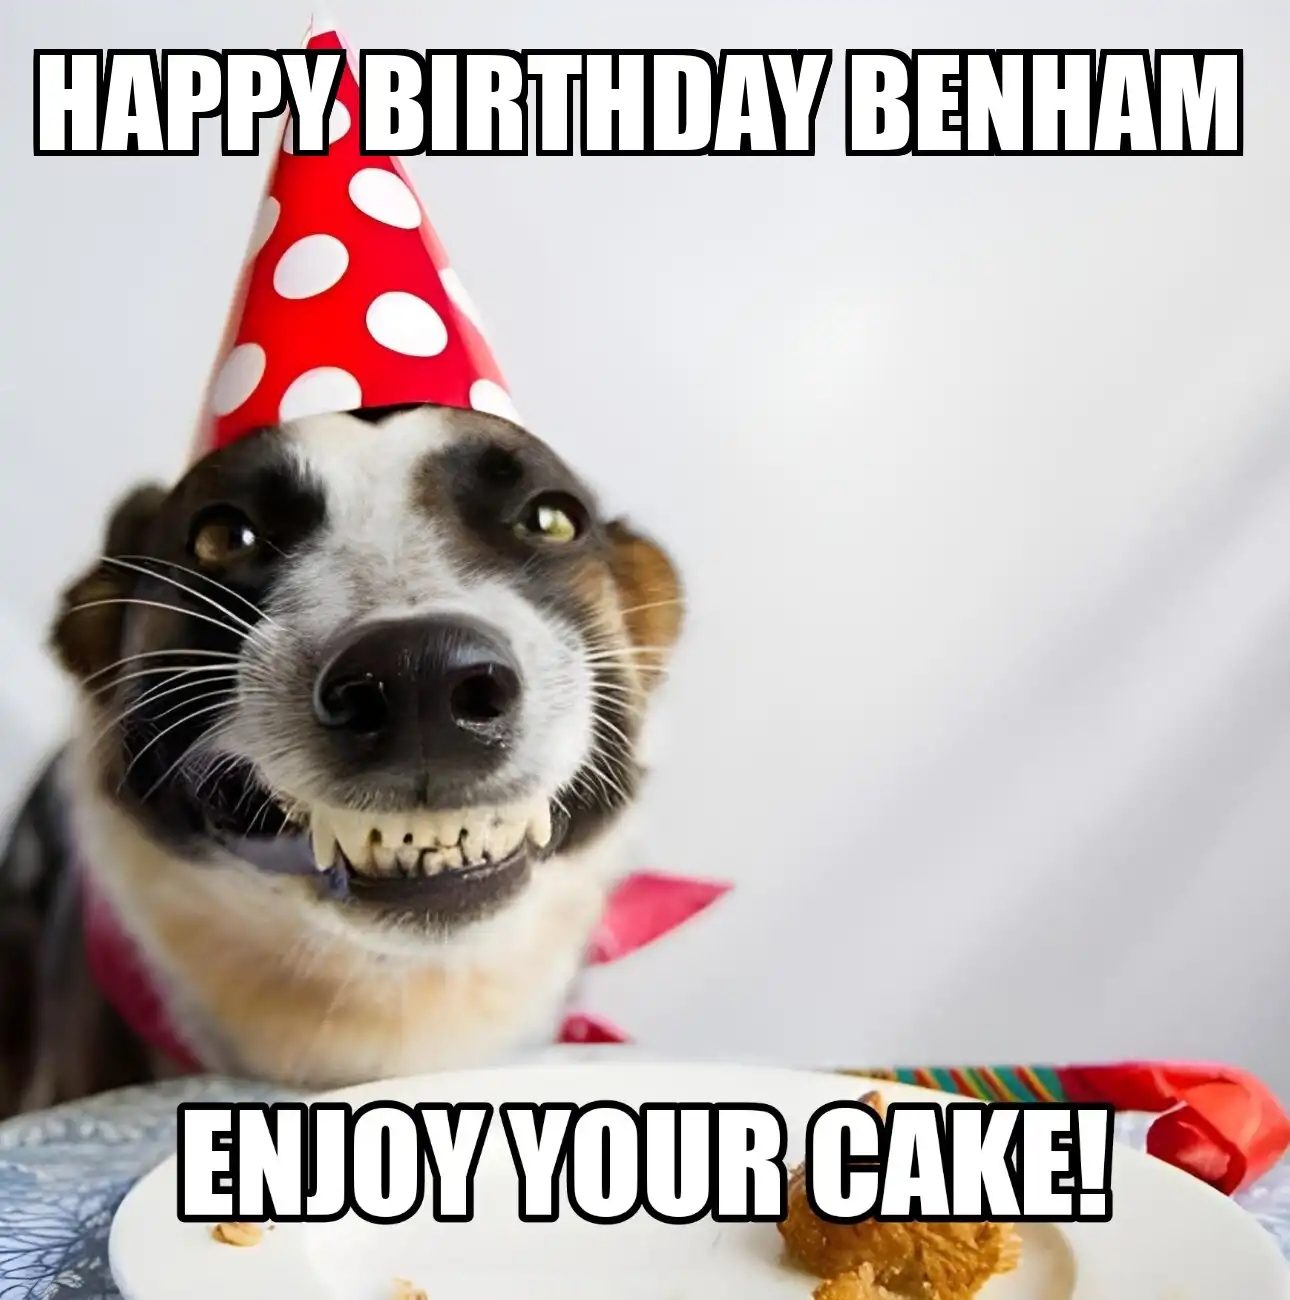 Happy Birthday Benham Enjoy Your Cake Dog Meme